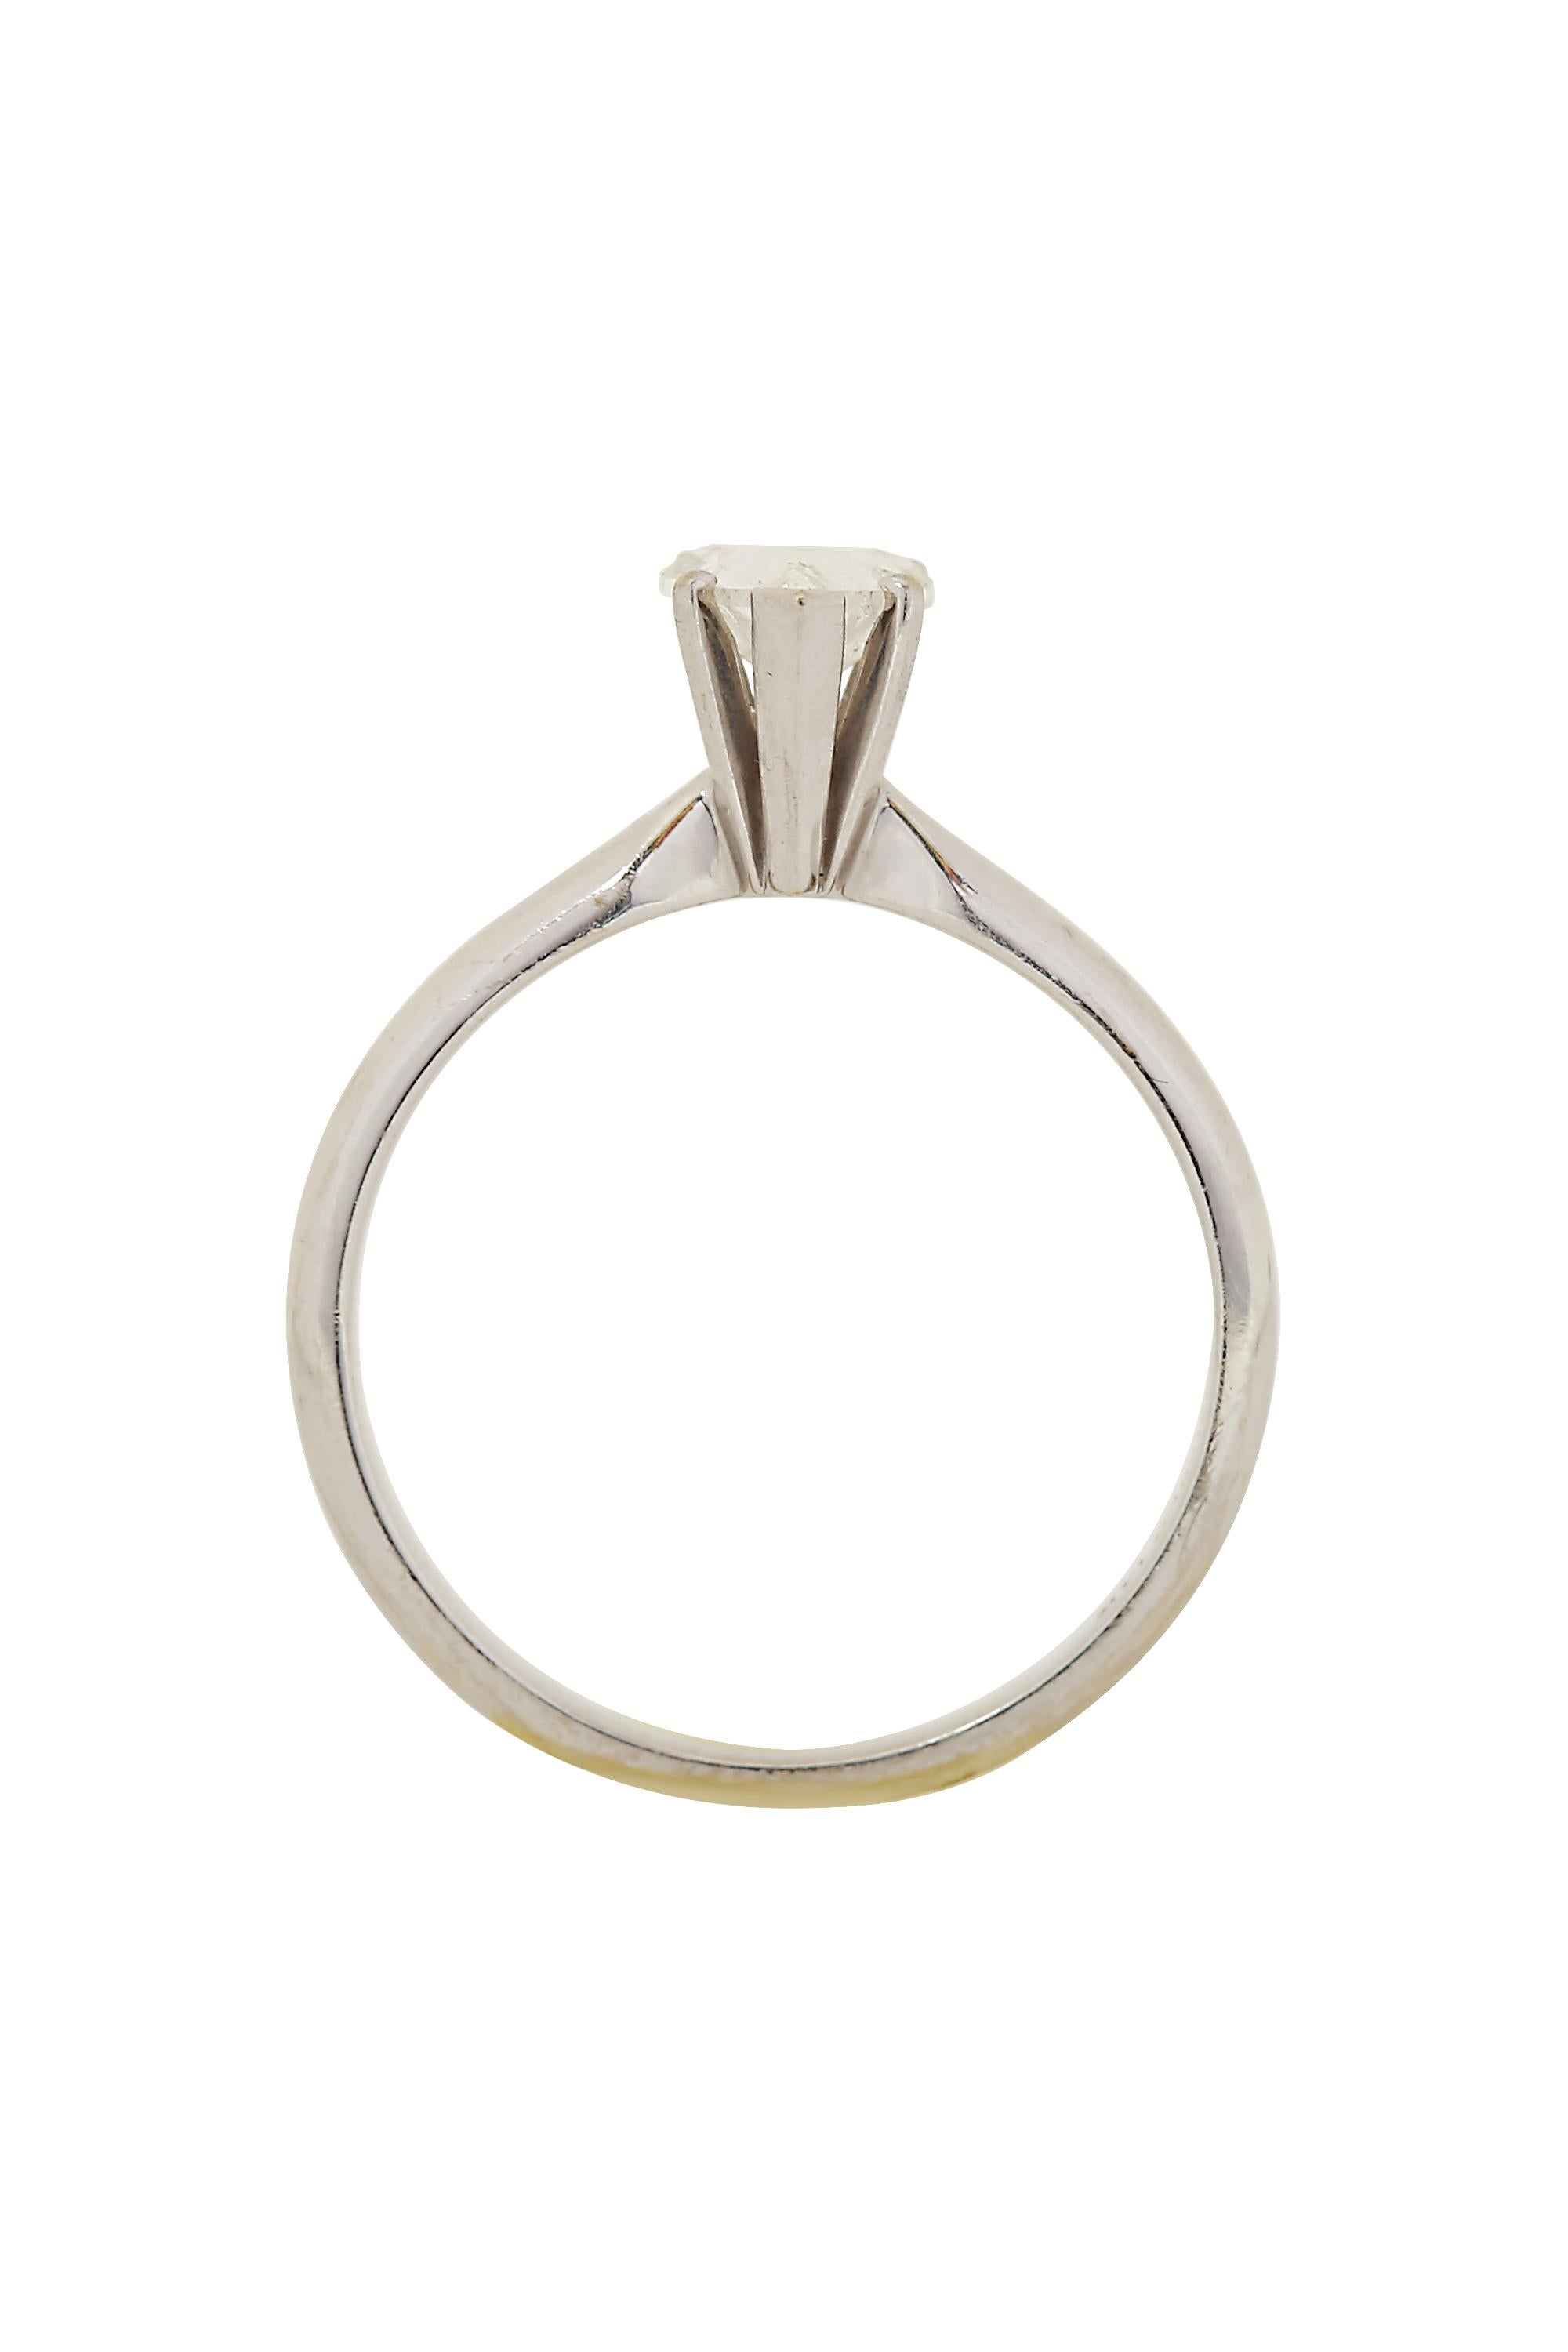 Schöner und eleganter Solitär-Diamantring mit einem herzförmigen Diamanten von etwa 0,40 Karat, Farbe G-H und Reinheit VS. Der Diamant ist in 5 Zacken 14K Weißgold Ring gesendet. Die aktuelle Ringgröße ist 6,25. 